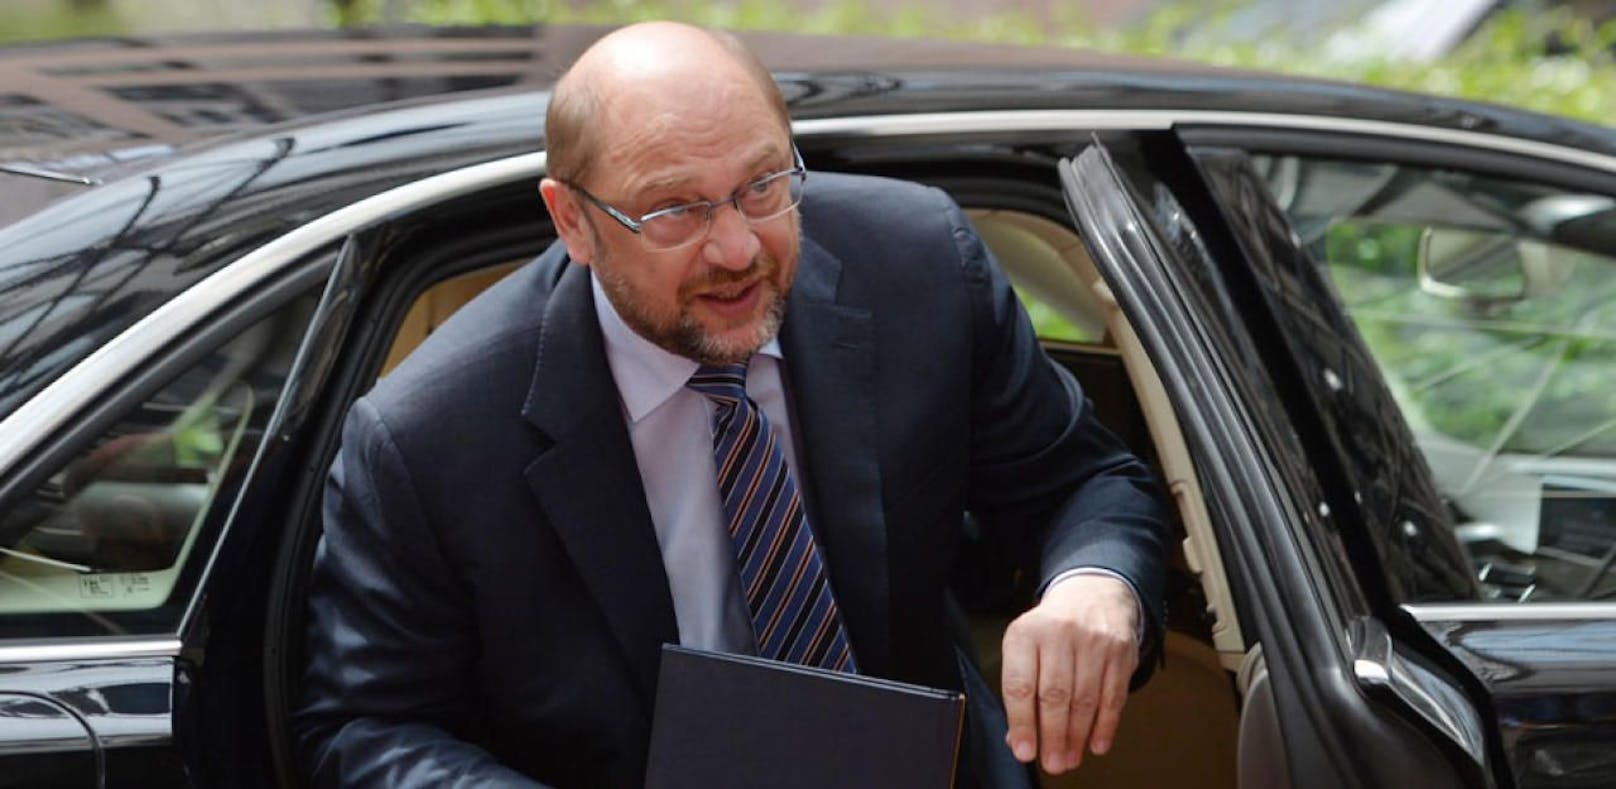 SPD-Chef Schulz gesteht: Ich war Alkoholiker